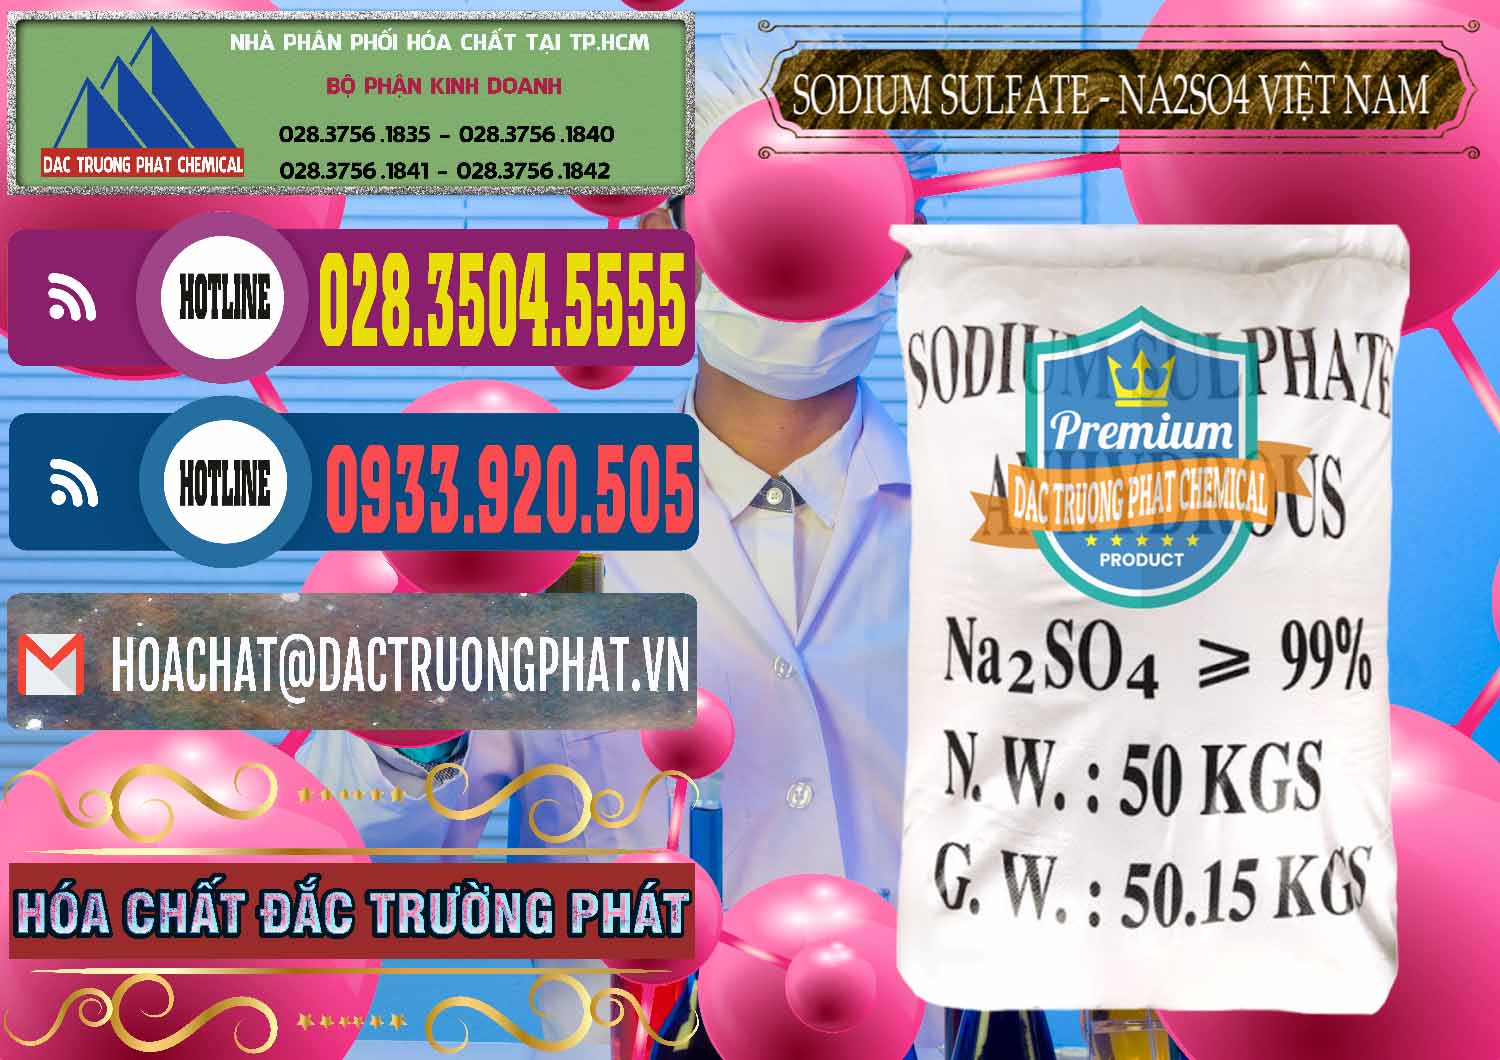 Công ty kinh doanh ( cung cấp ) Sodium Sulphate - Muối Sunfat Na2SO4 Việt Nam - 0355 - Cty cung cấp ( kinh doanh ) hóa chất tại TP.HCM - muabanhoachat.com.vn